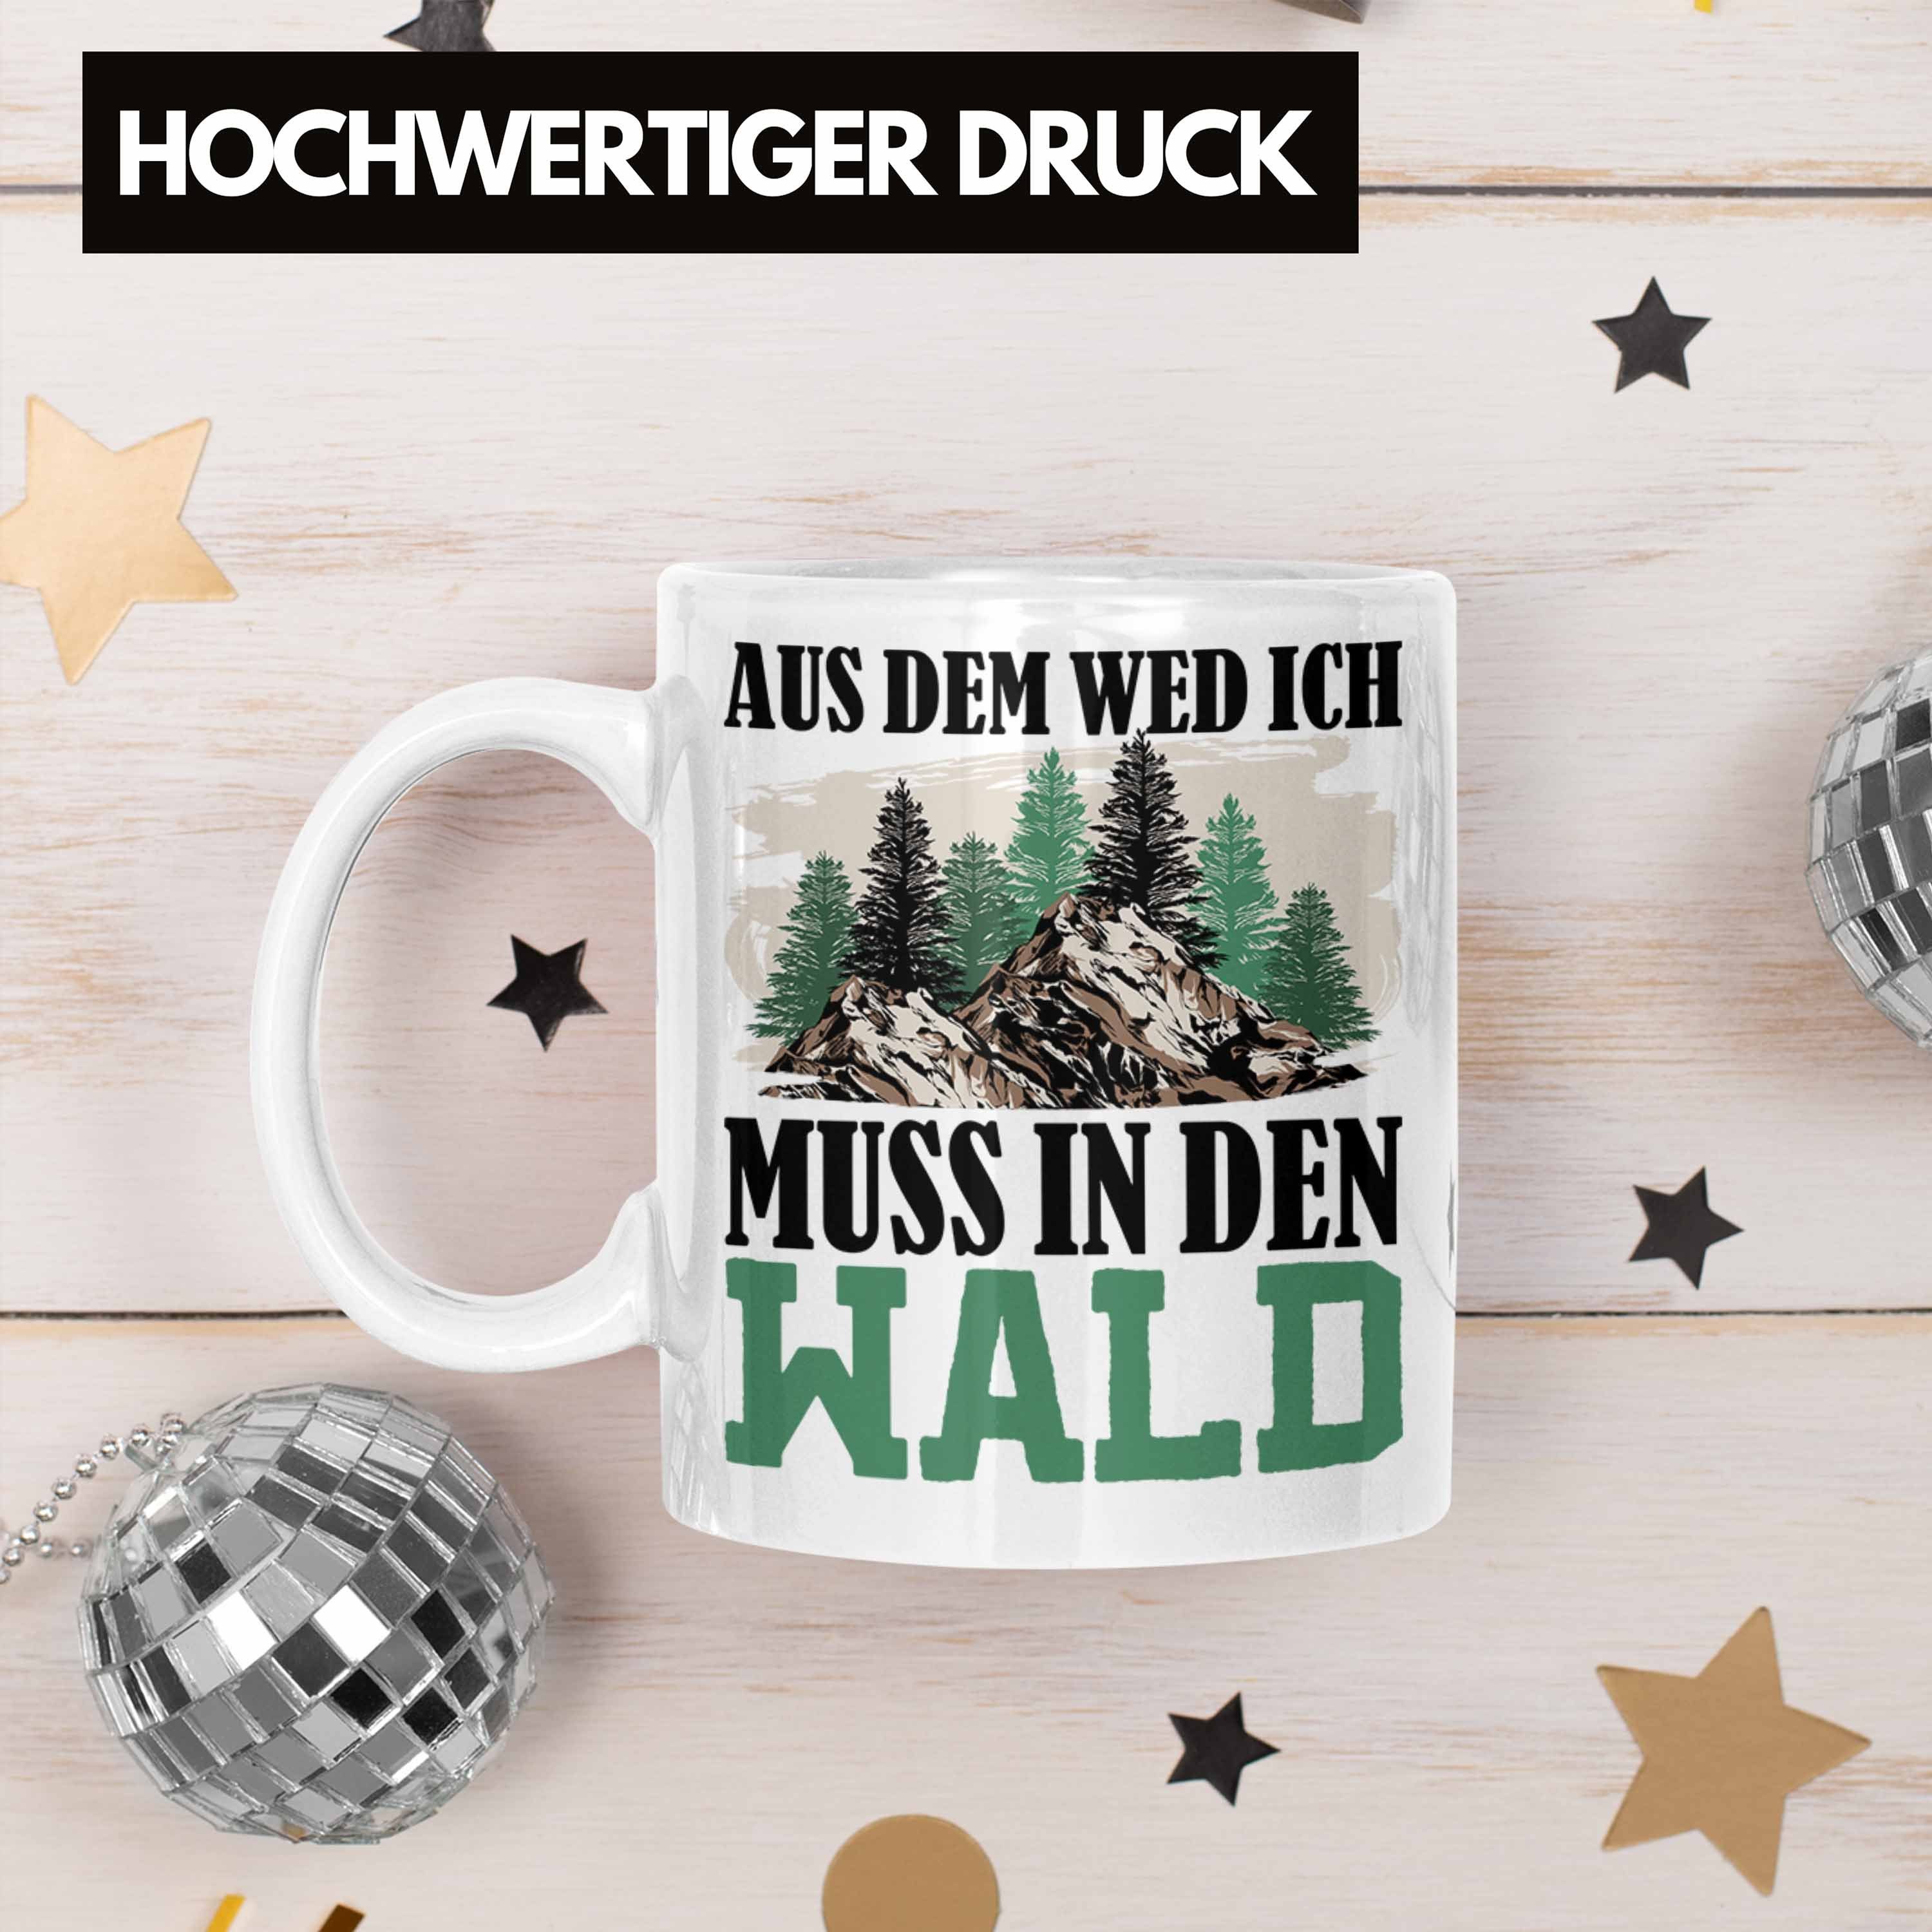 Weg Aus In Weiss Wald-Gänger Tasse Trendation Tasse Geschenkid für Wald Den Muss Wem Geschenk